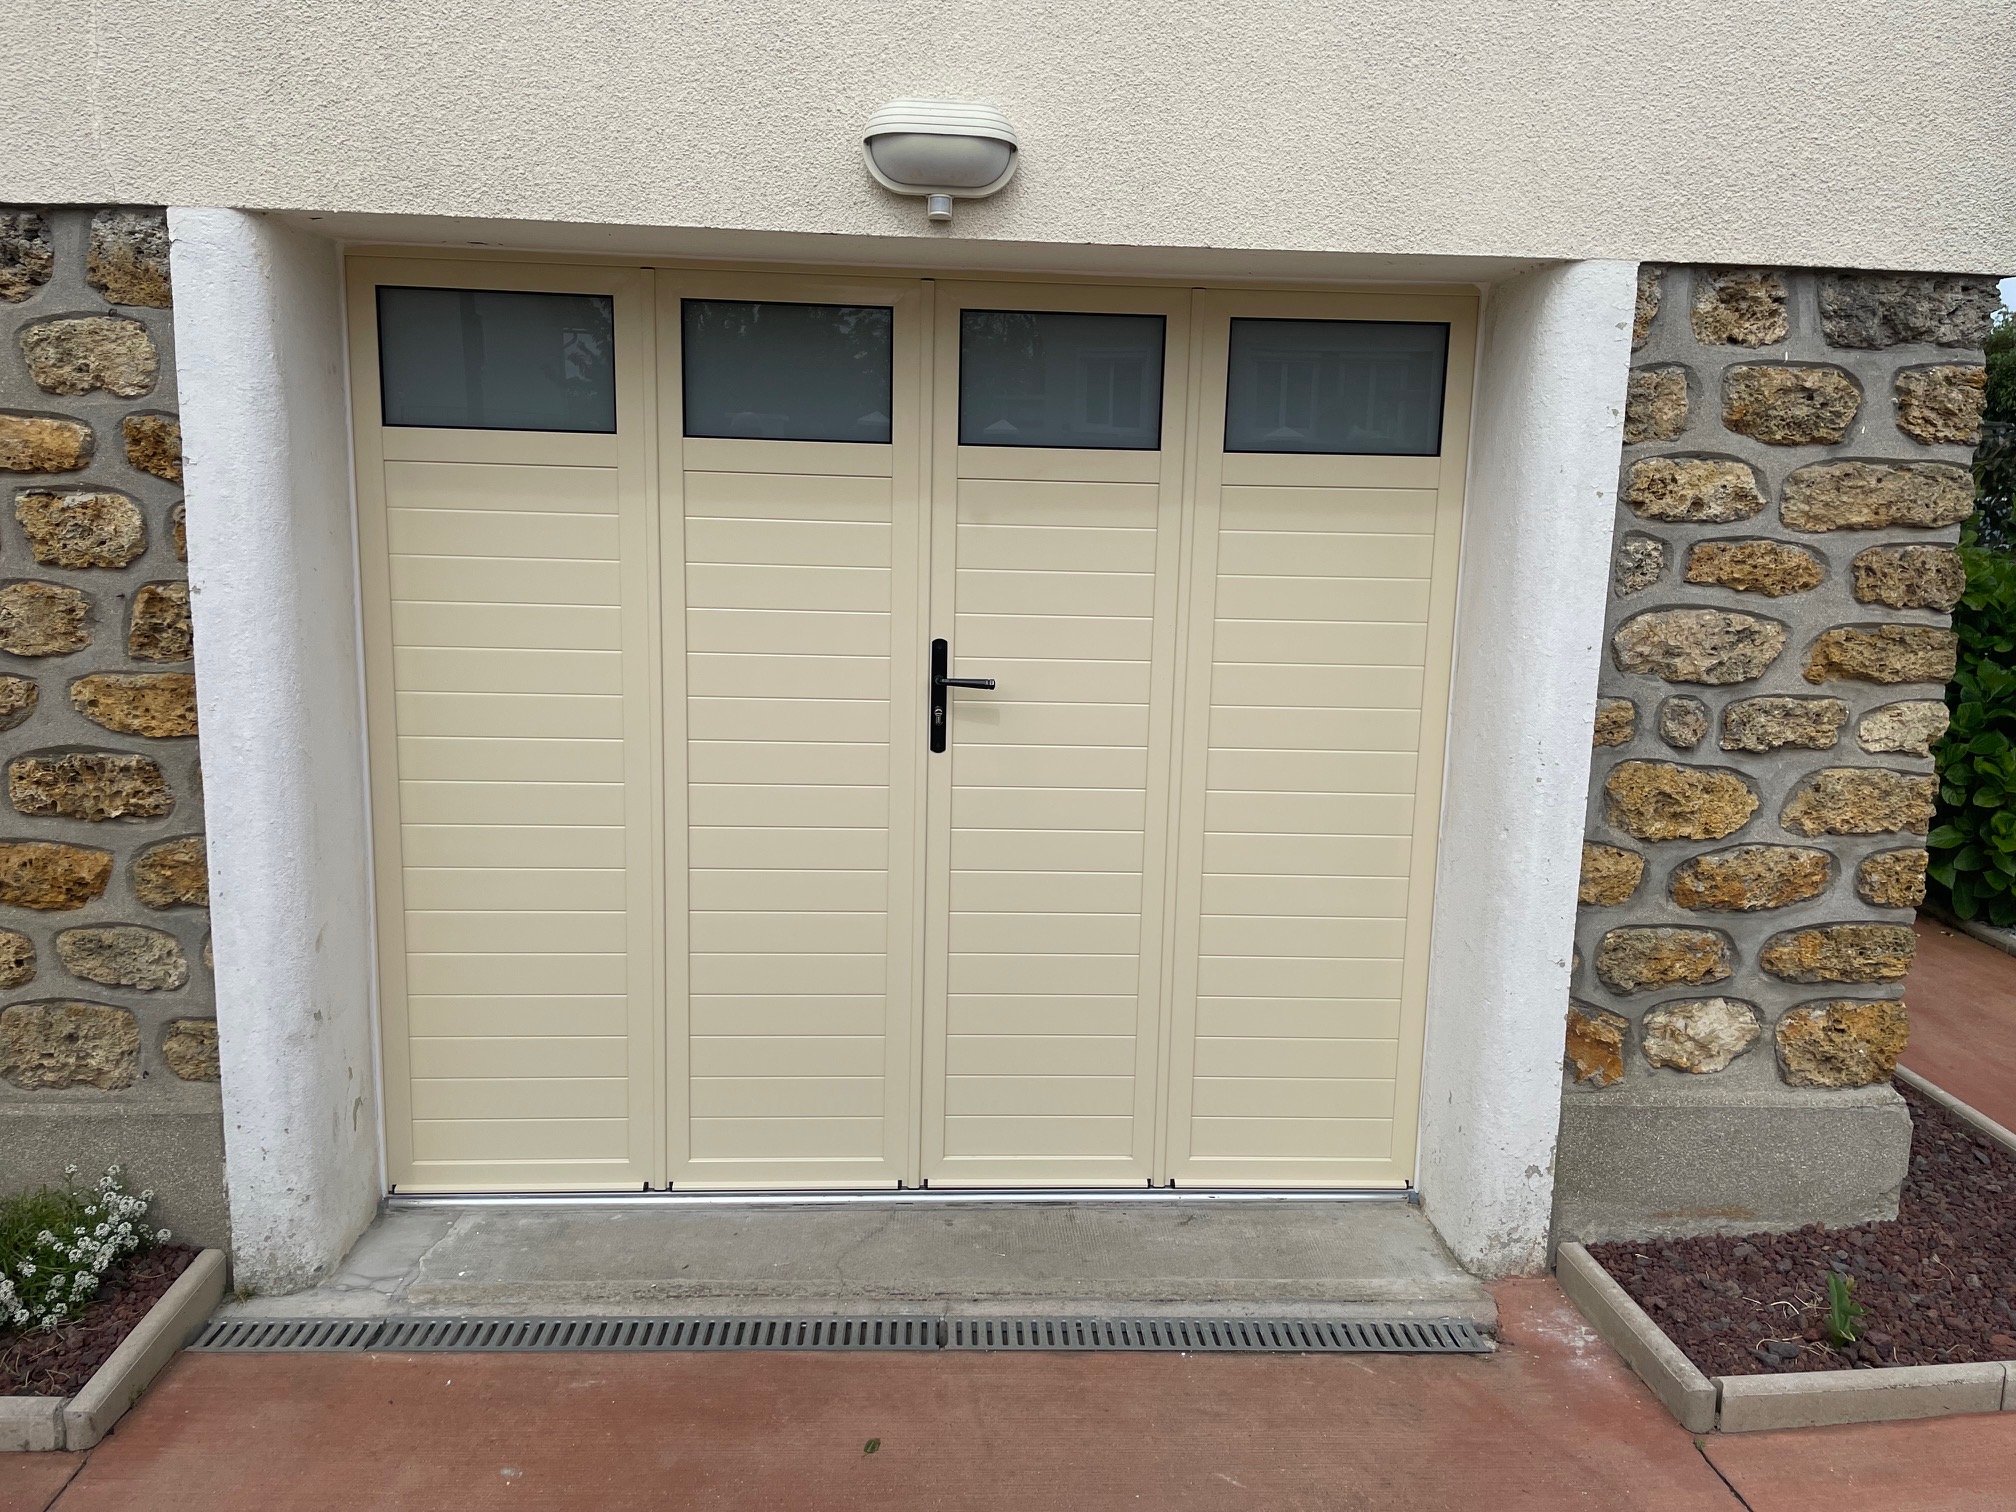 Vue extérieur - porte de garage 4 battants en aluminium sur mesure avec hublots